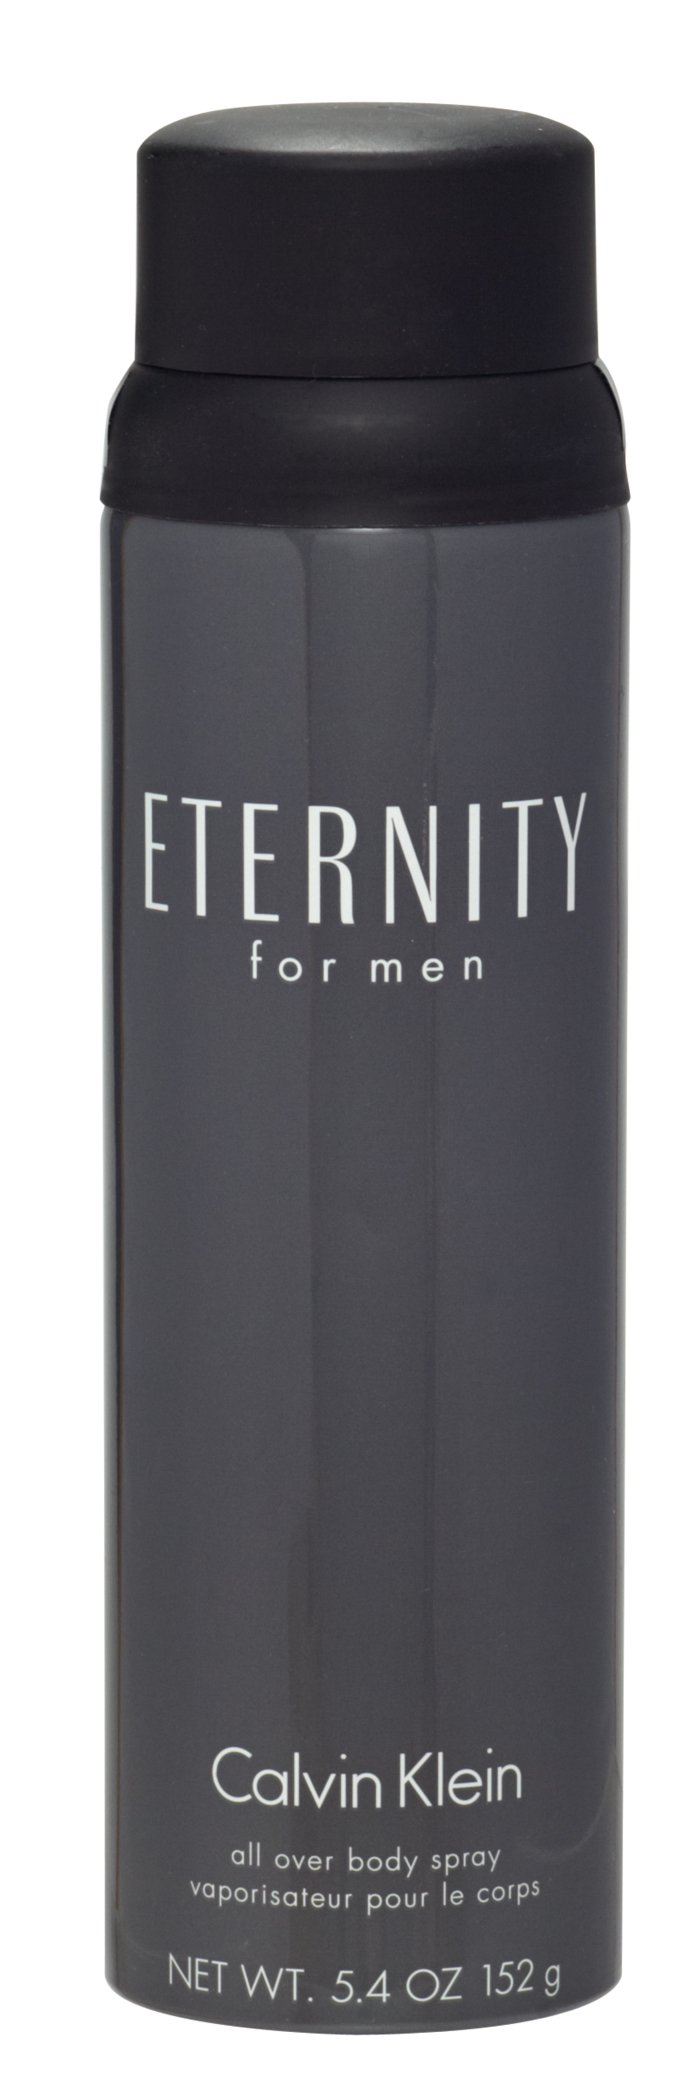 Calvin Klein Eternity Body Spray for Men - Shop Fragrance at H-E-B